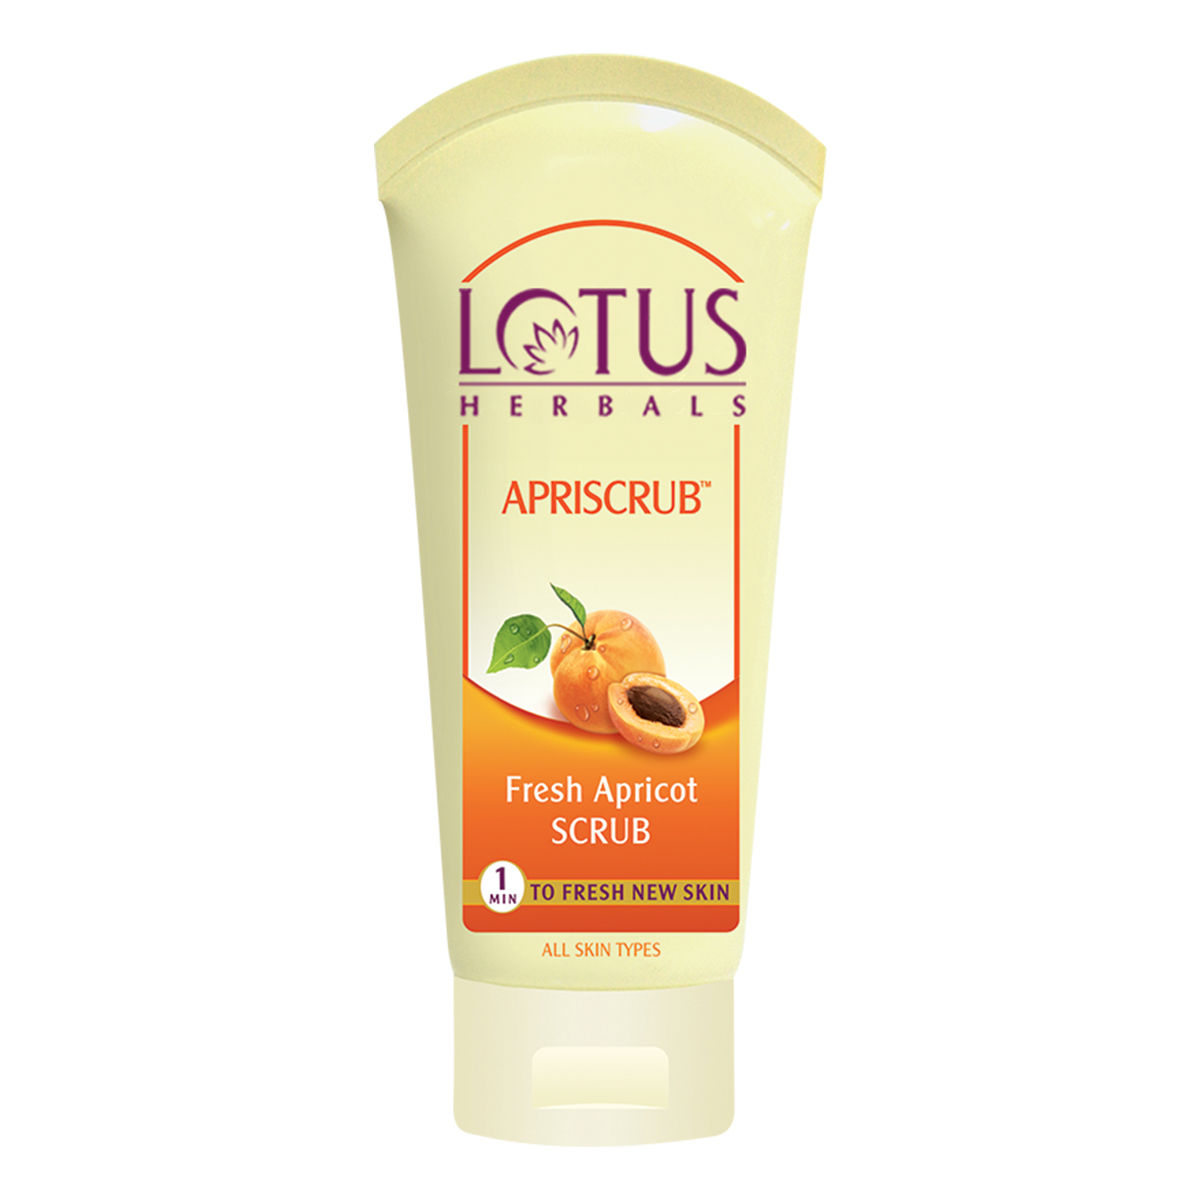 Lotus Herbals Apriscrub Fresh Apricot Scrub, 100 gm, Pack of 1 